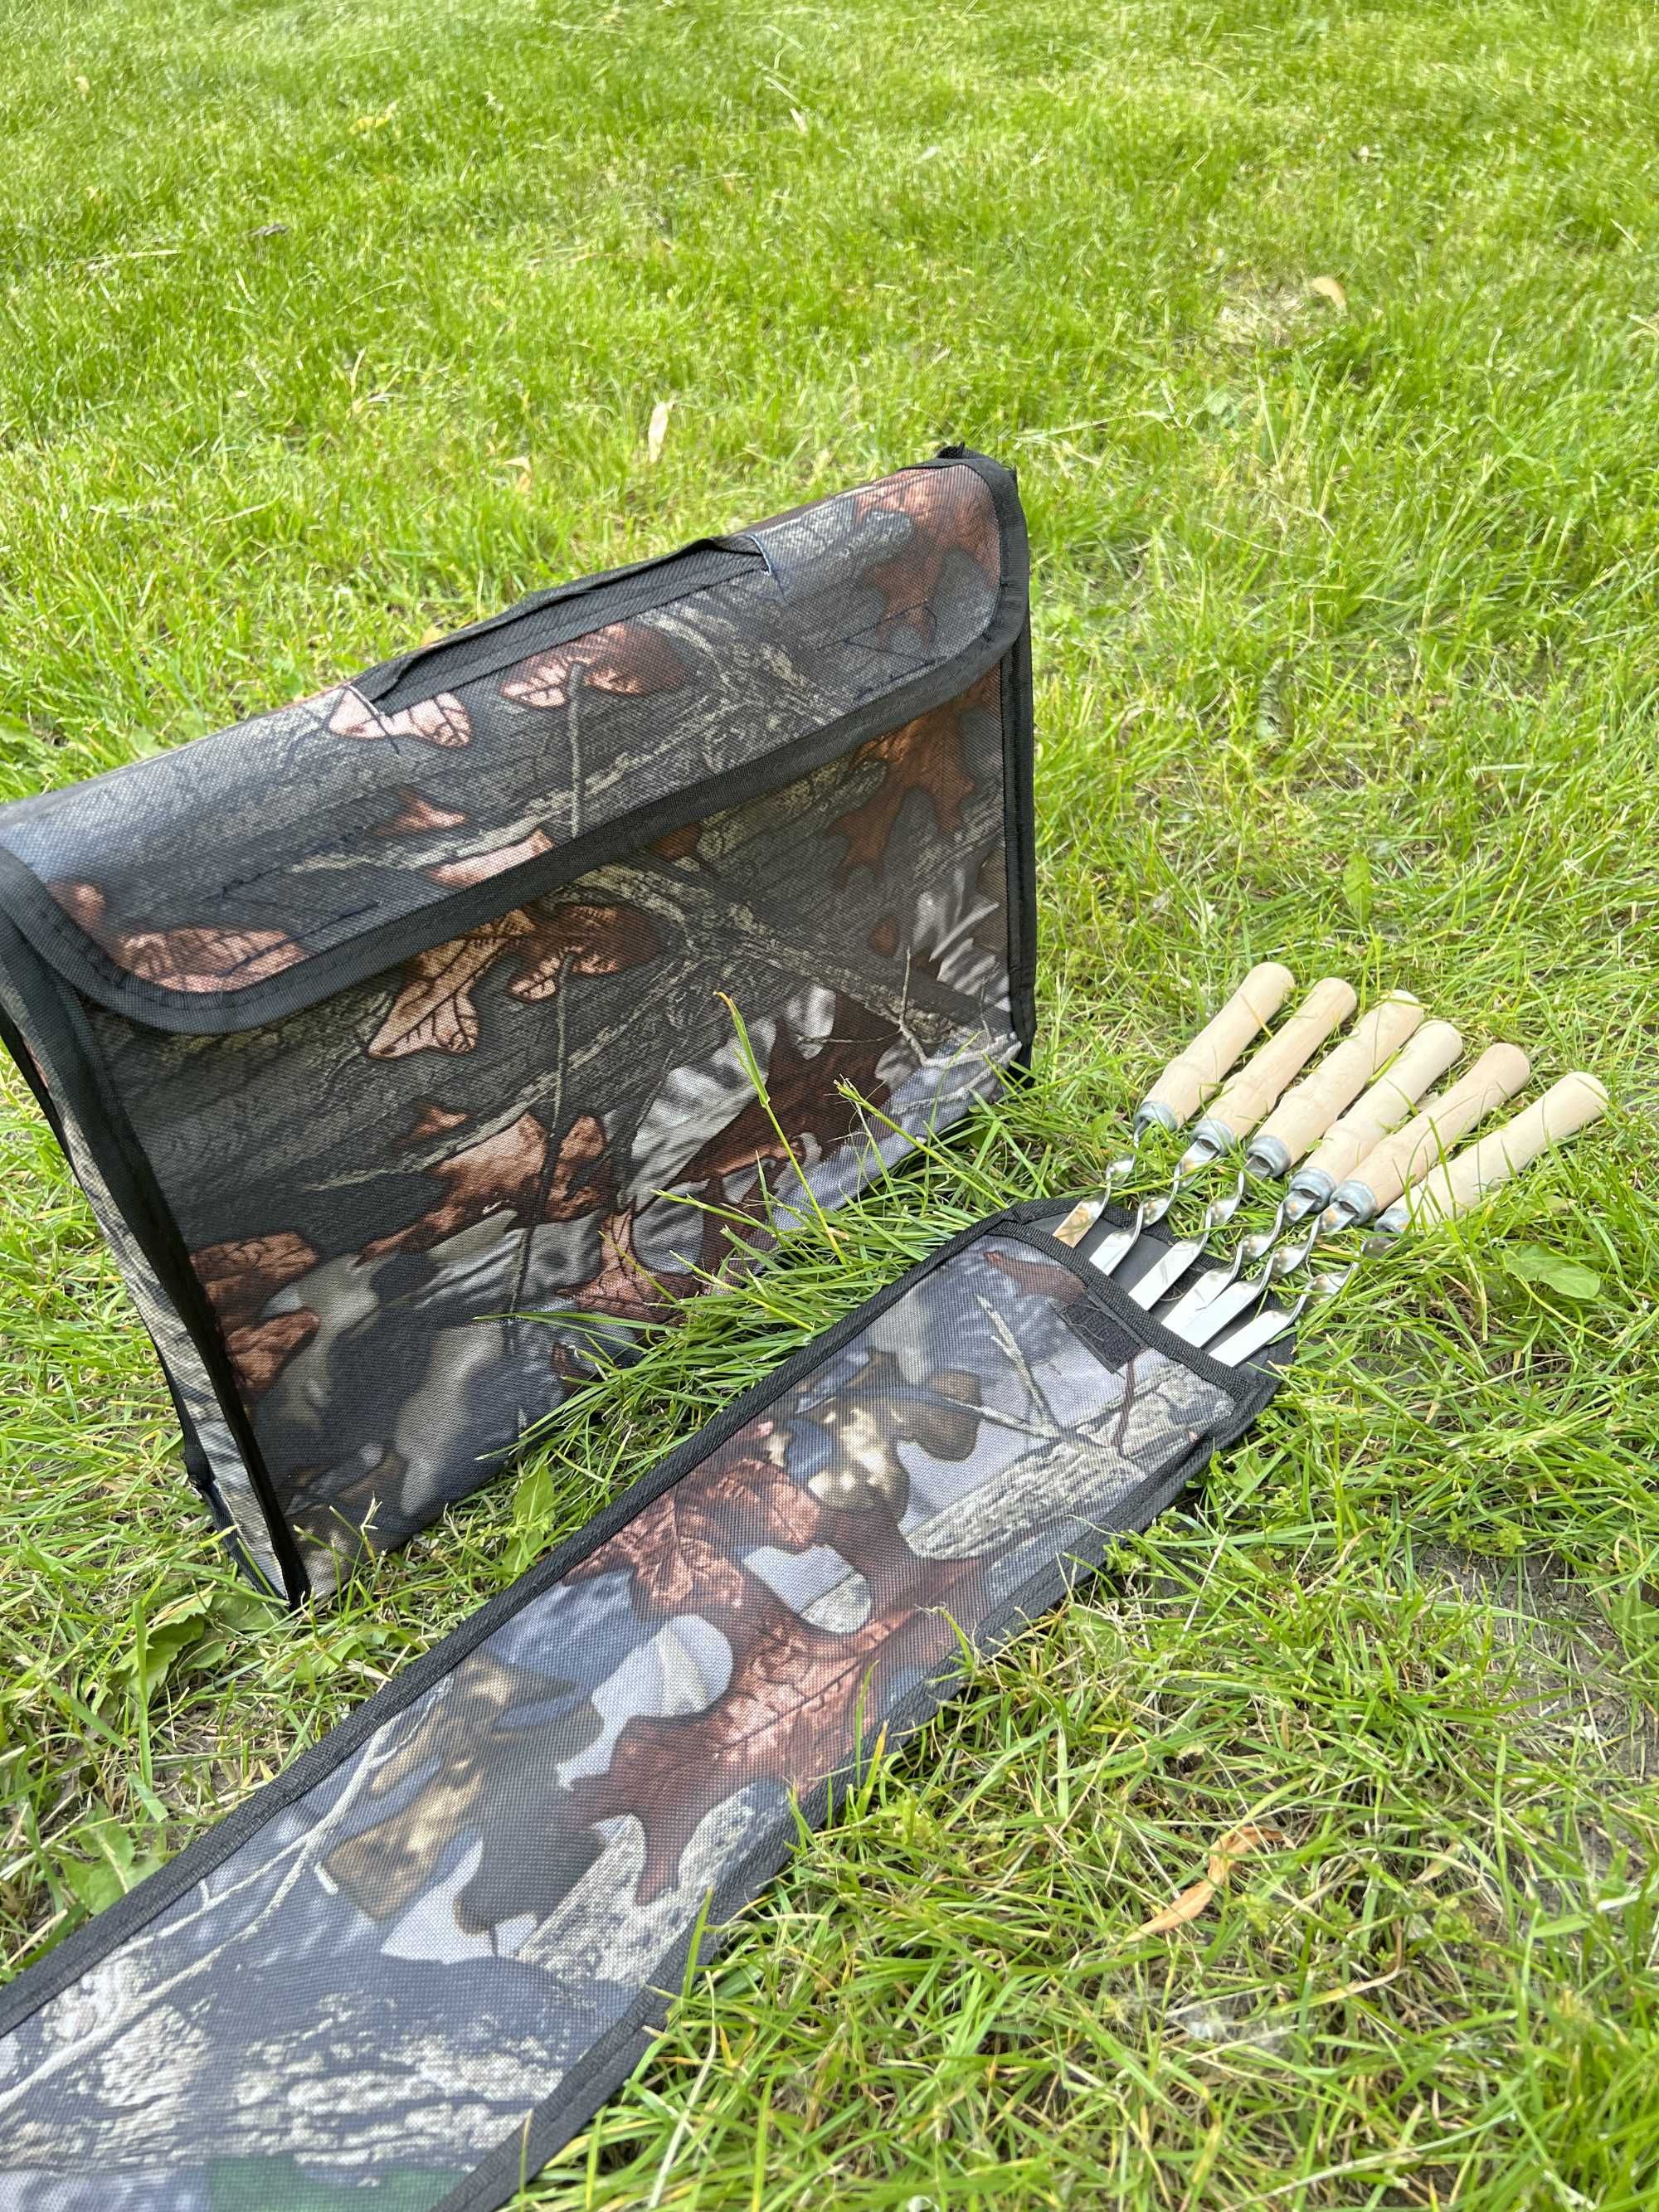 Składany mangal grill walizka na 6 szaszłyków prezent BBQ мангал